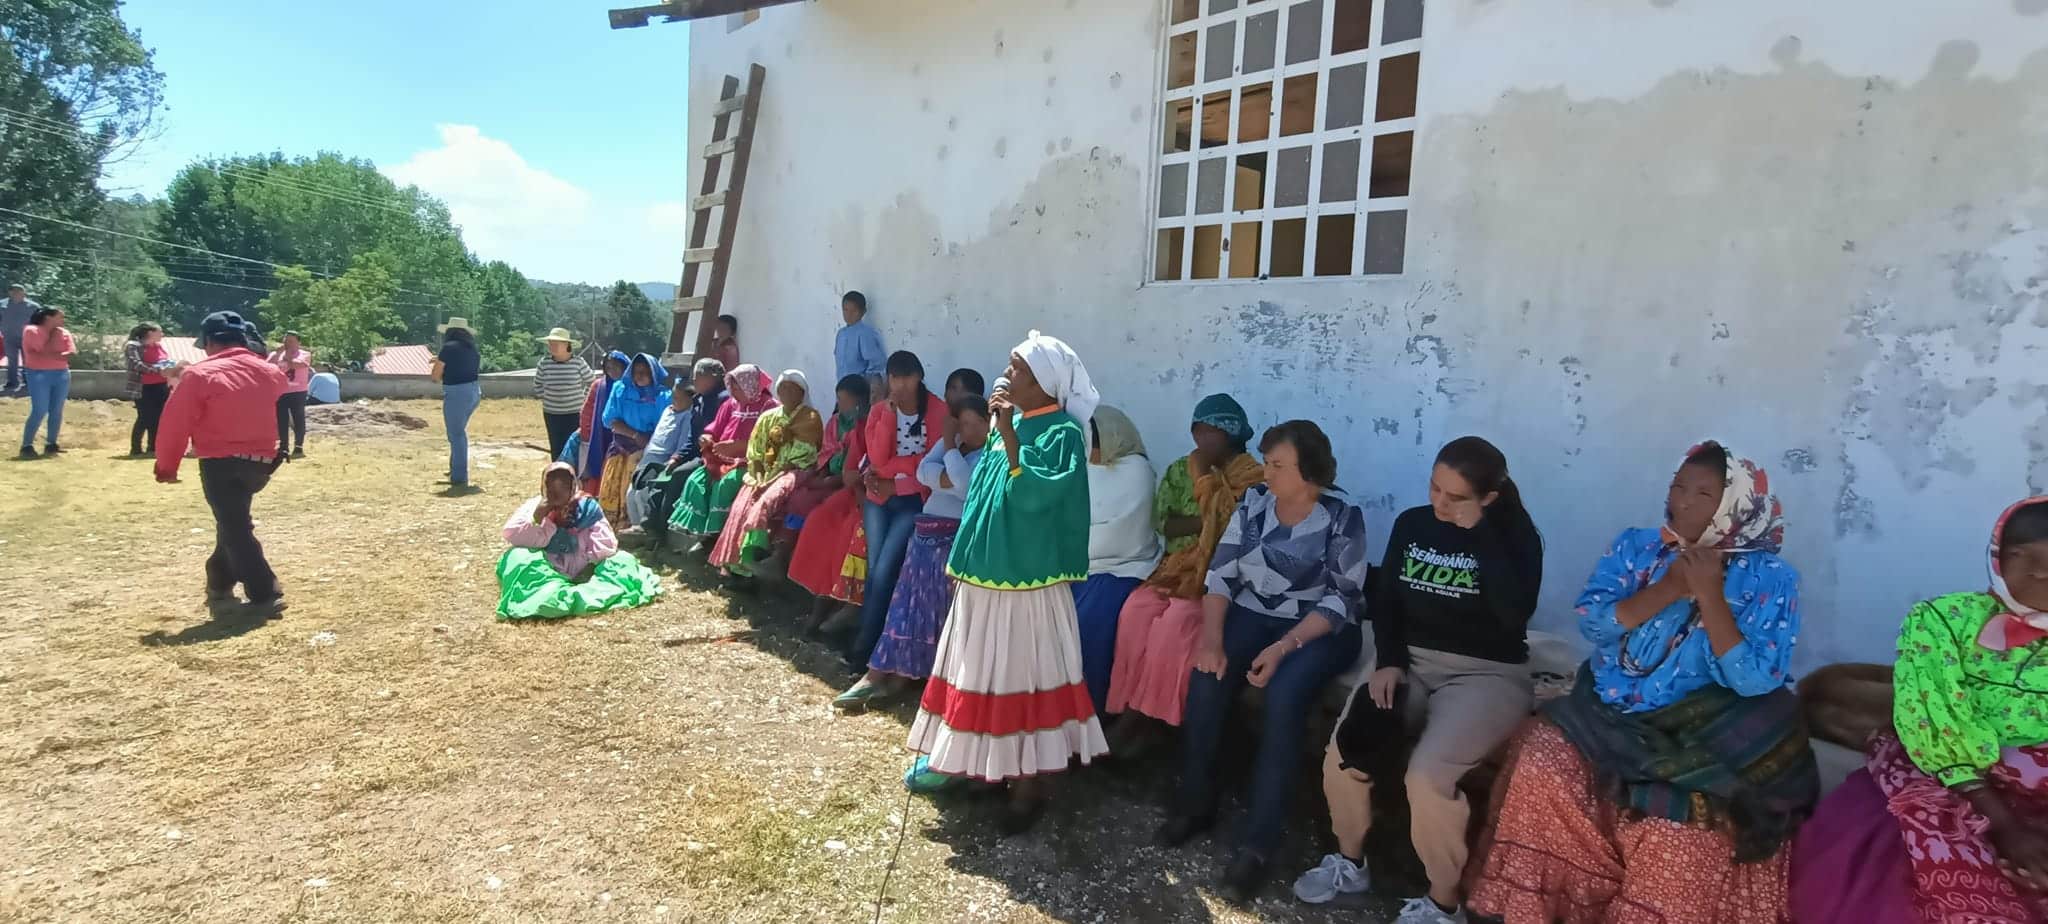 Los indígenas tarahumaras reconstruyeron su iglesia